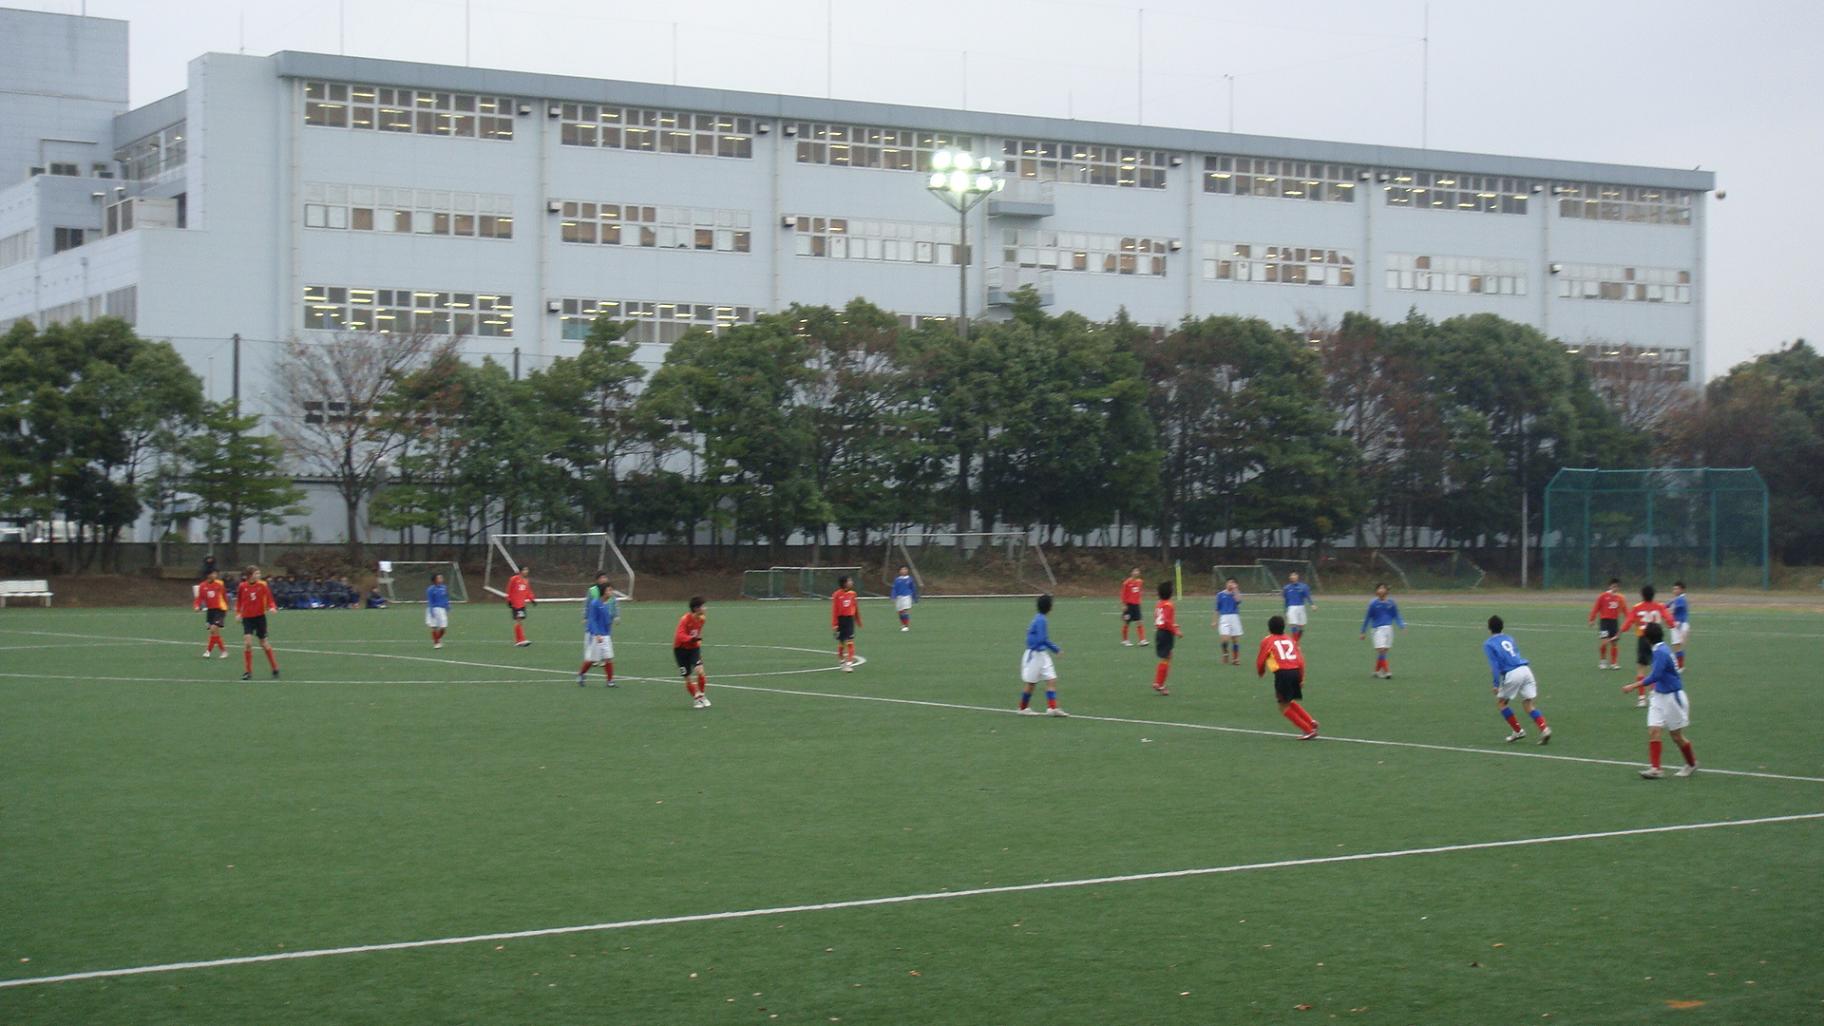 トレーニングマッチ 横浜fマリノスjrユース追浜 名古屋u 15 追浜グラウンド 蹴りたいグランパス